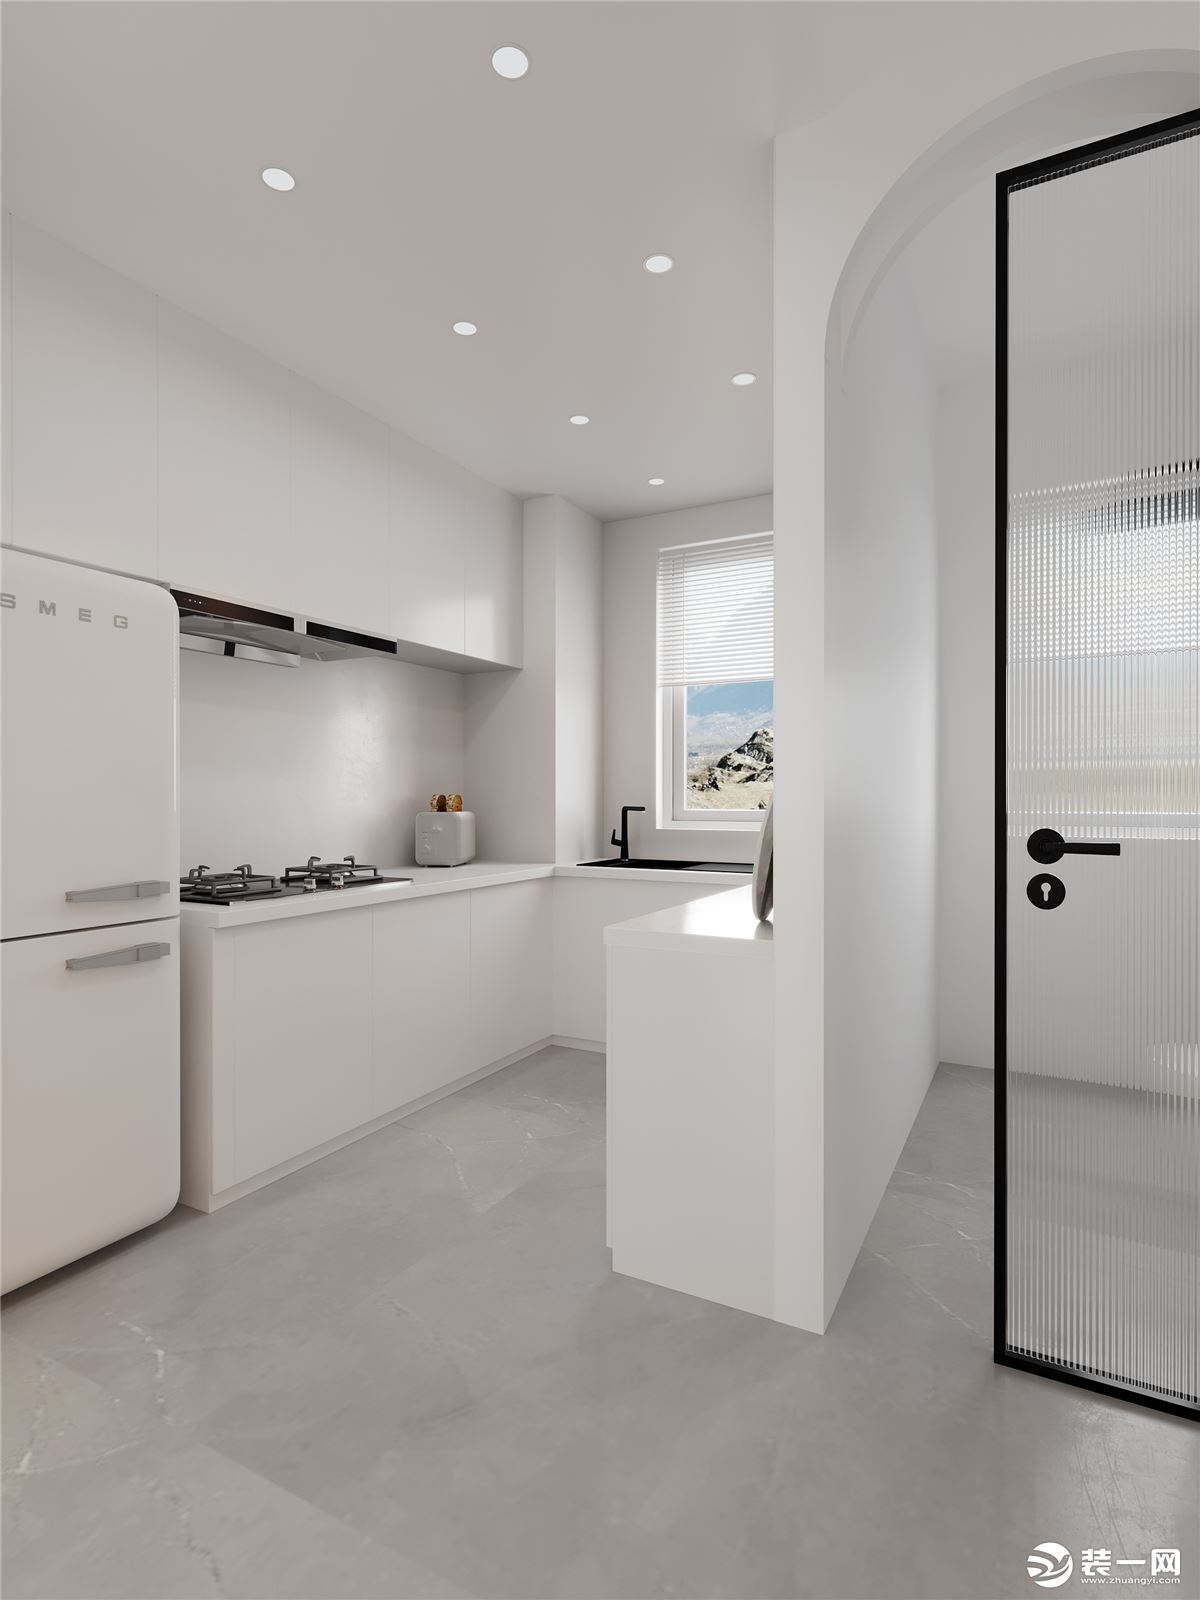 厨房面积较小，打通厨房隔墙。做开放式厨房，增大厨房使用空间。